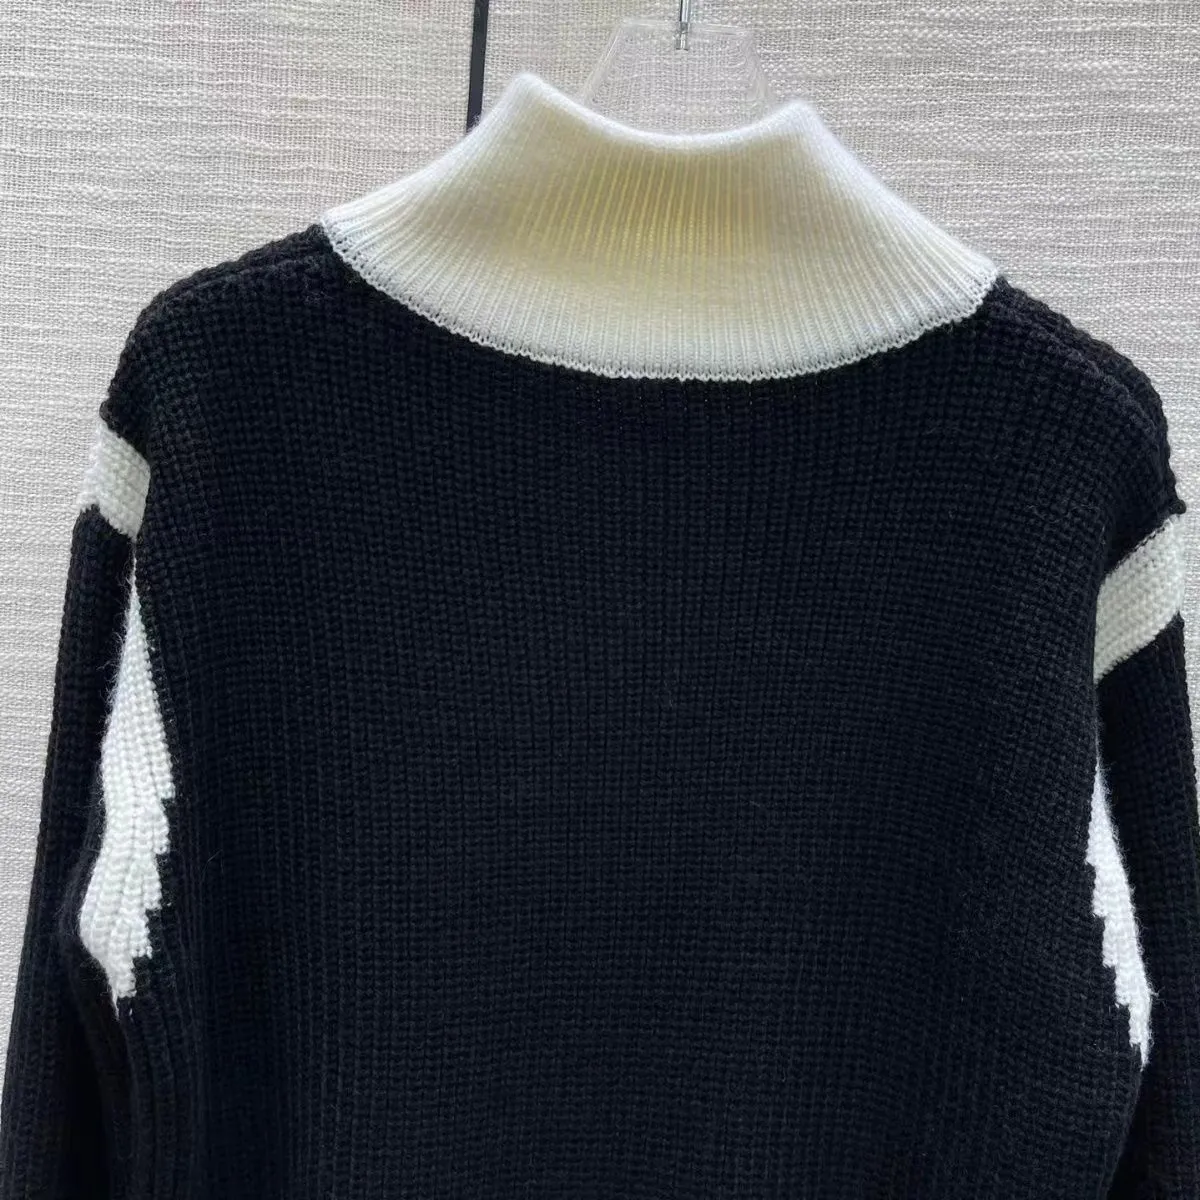 Chandail pour femmes automne femmes chandails Cardigan mode à manches longues tricots femmes décontracté concepteur chandails